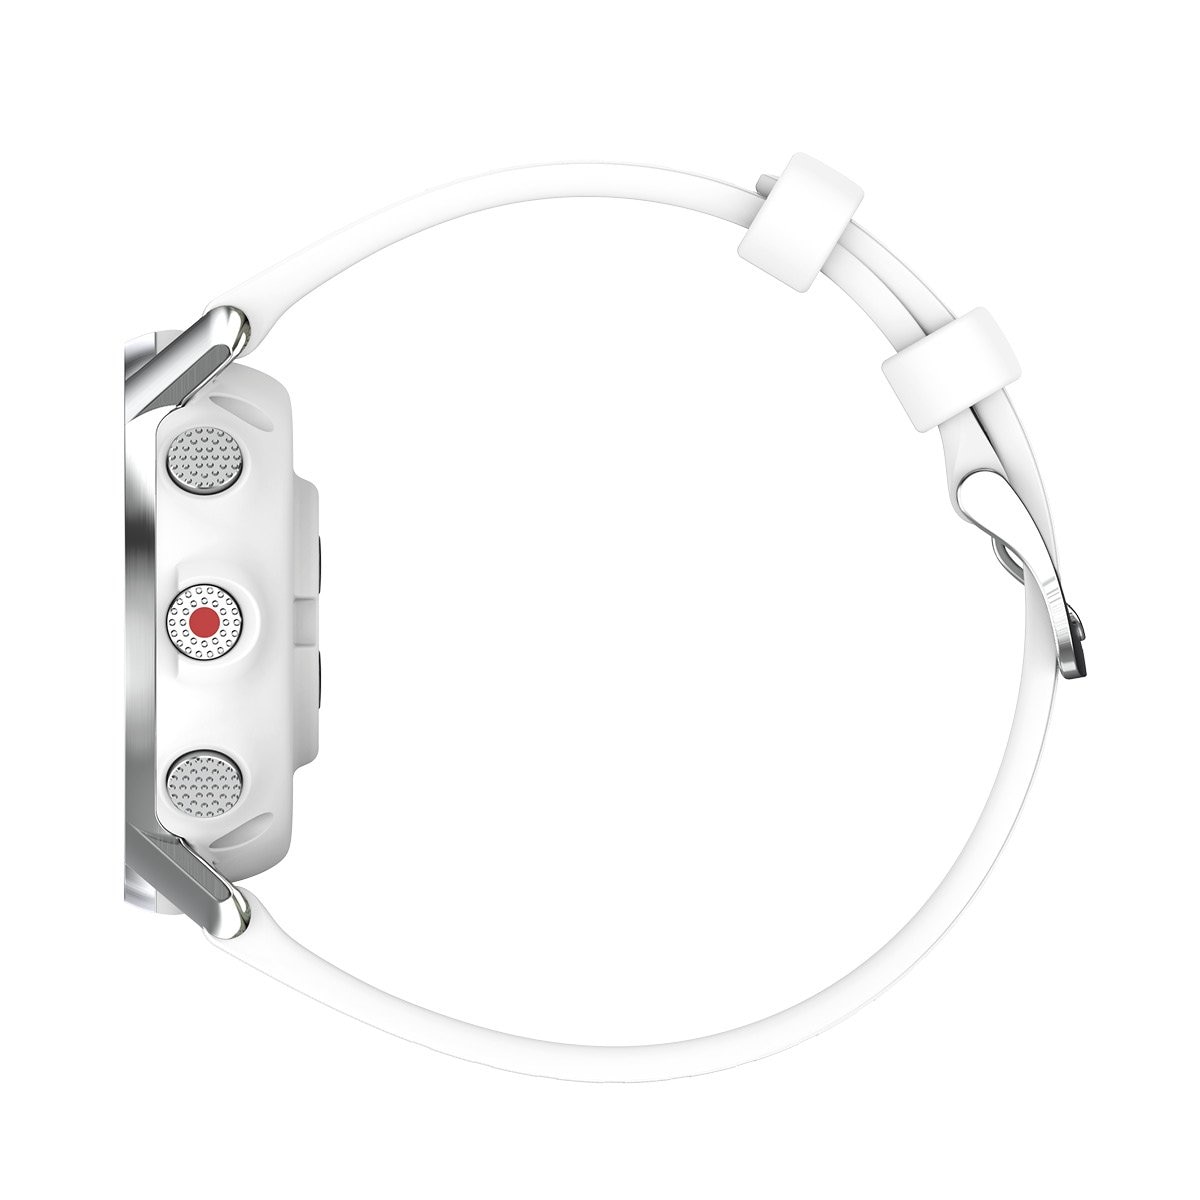 Smartwatch Blanco Grit-X Polar